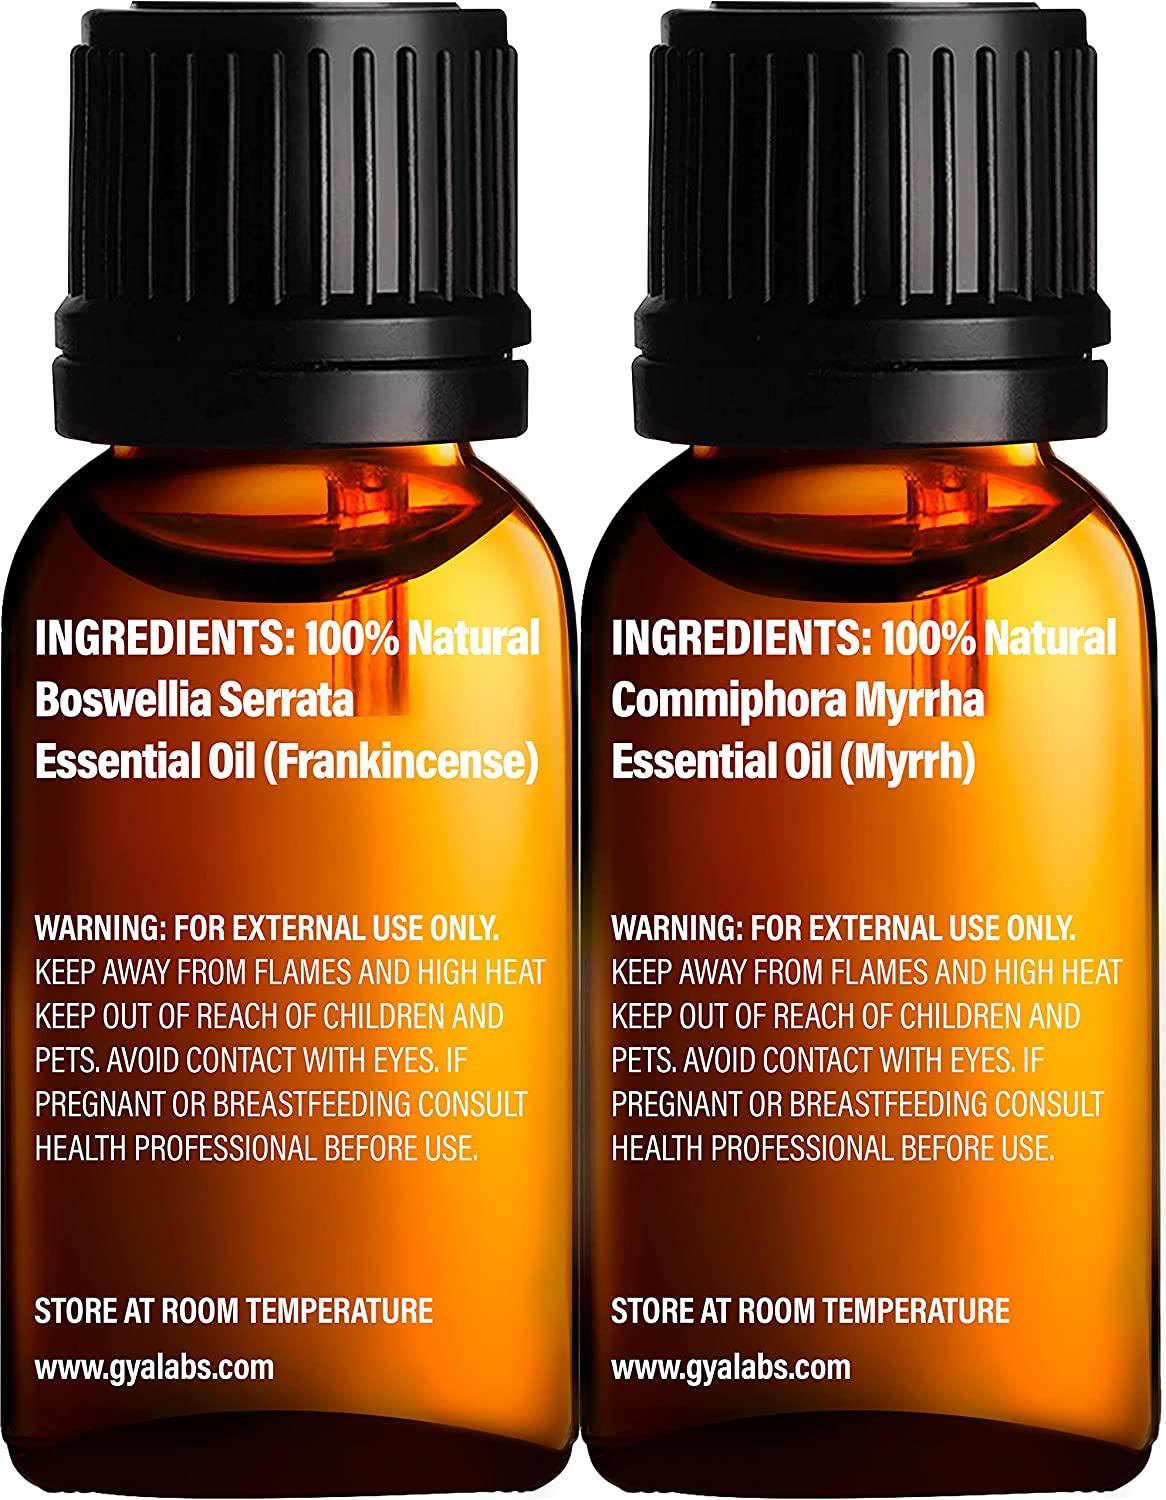 All Natural Frankincense & Myrrh Essential Oil Blend – Skylara